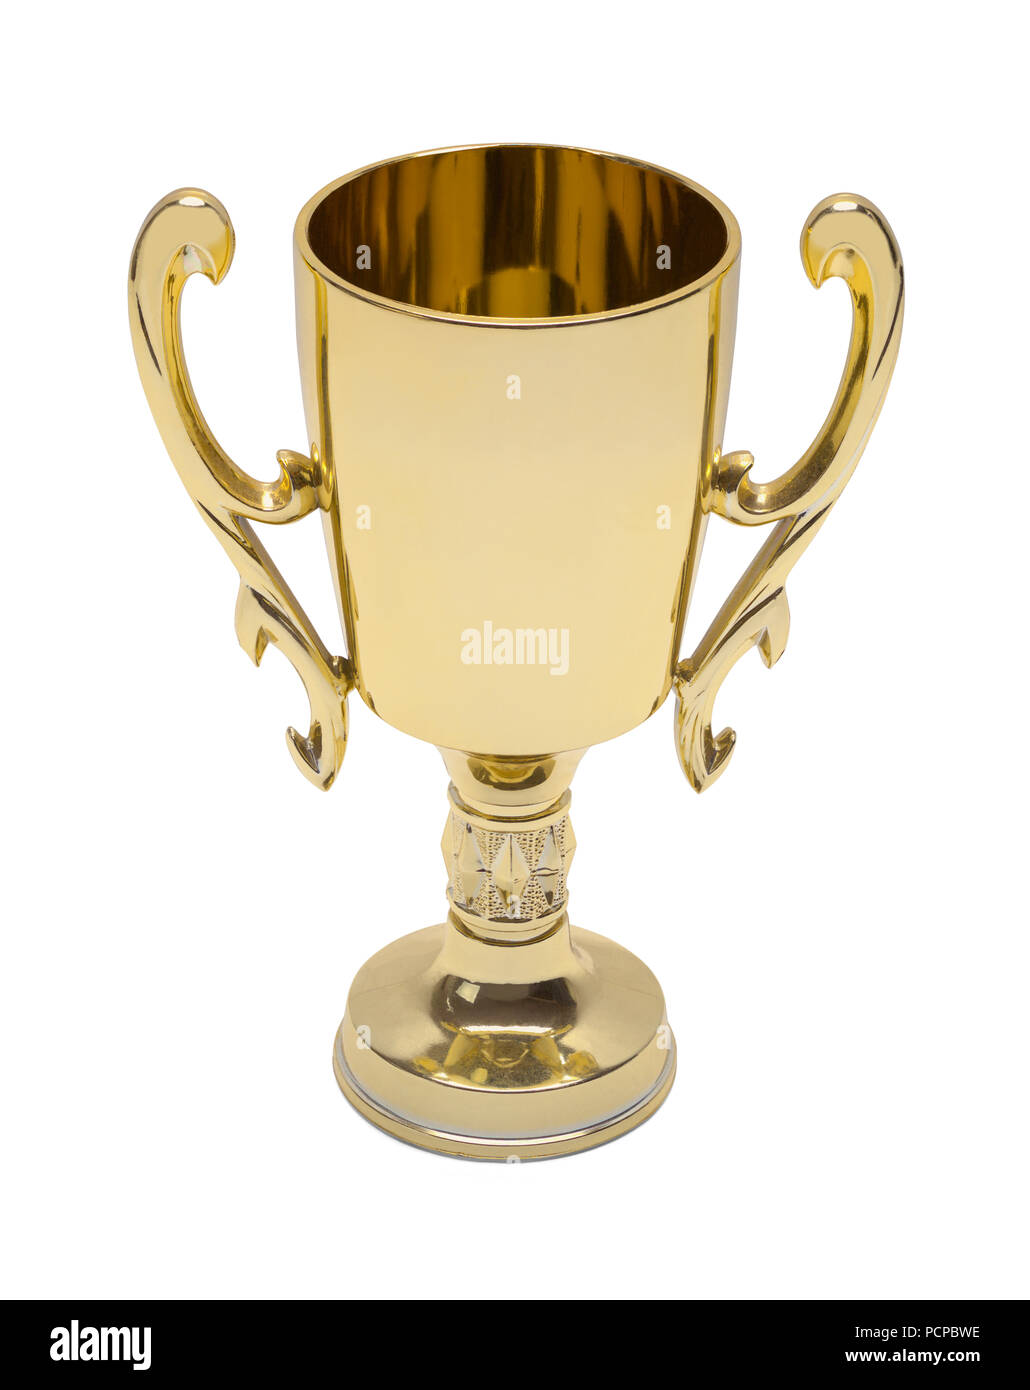 Gold Award Trophy Cup isolé sur un fond blanc. Banque D'Images